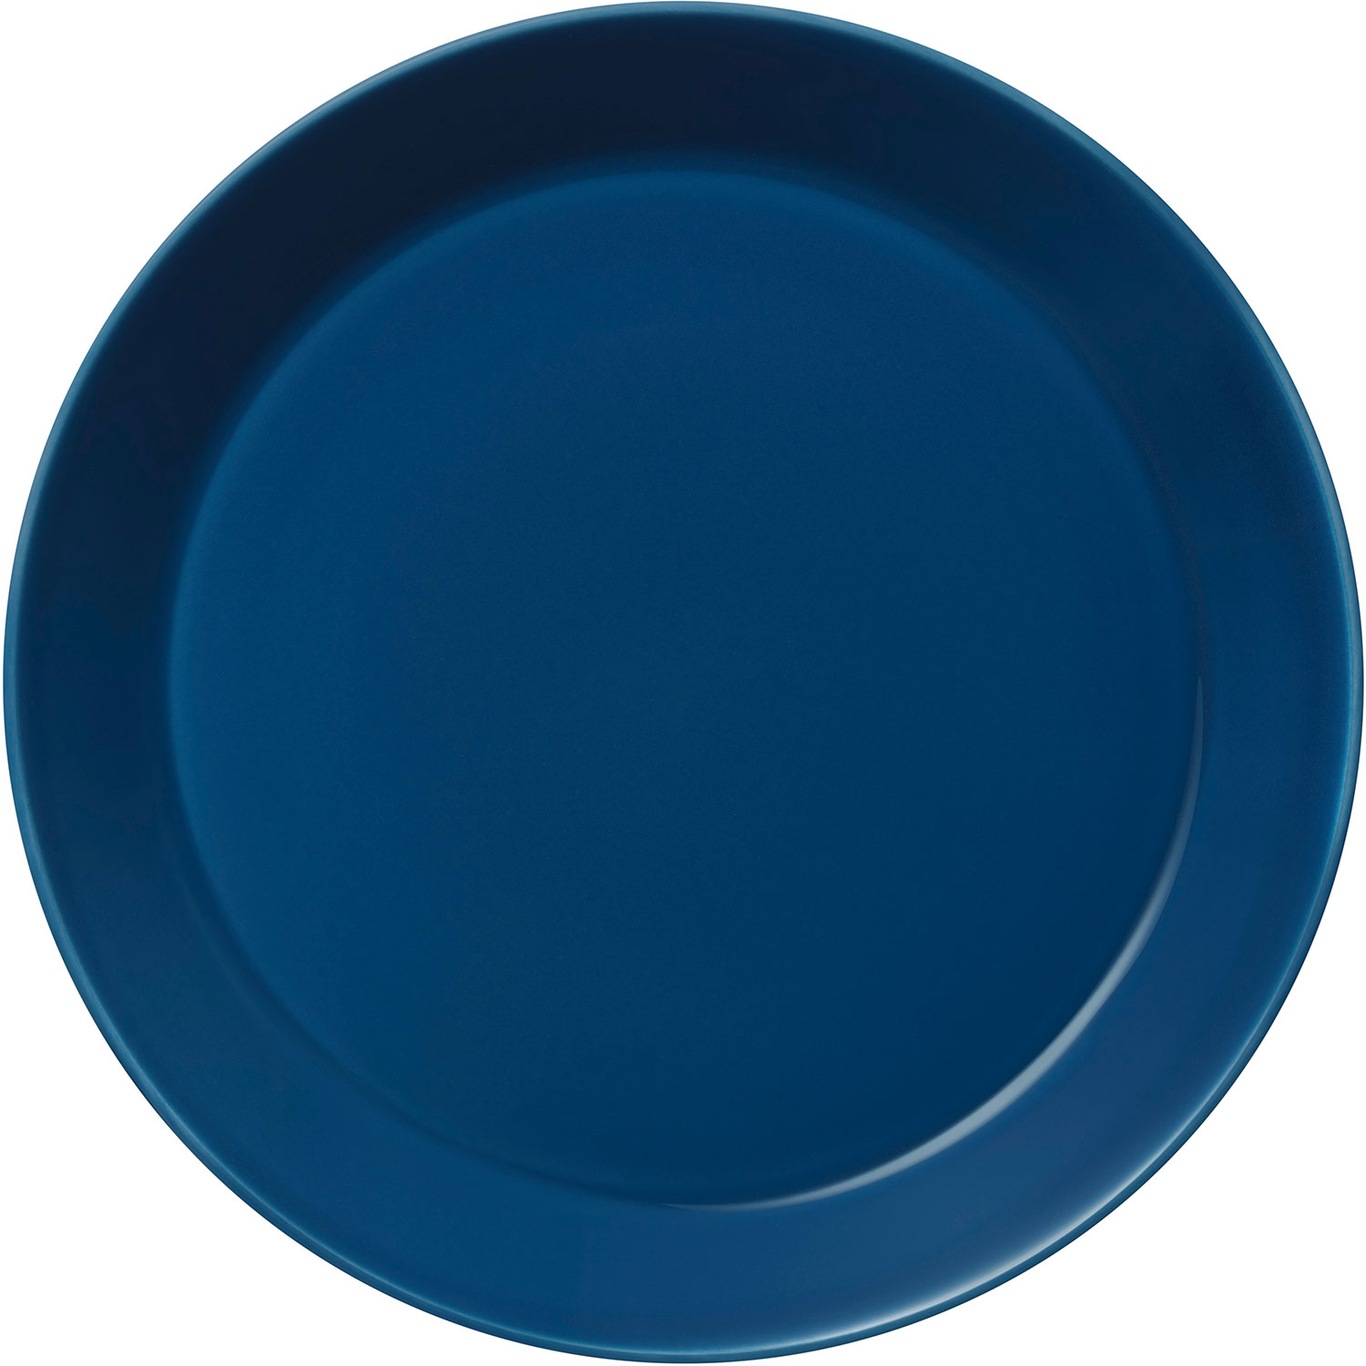 Teema plate 26cm vintage blue